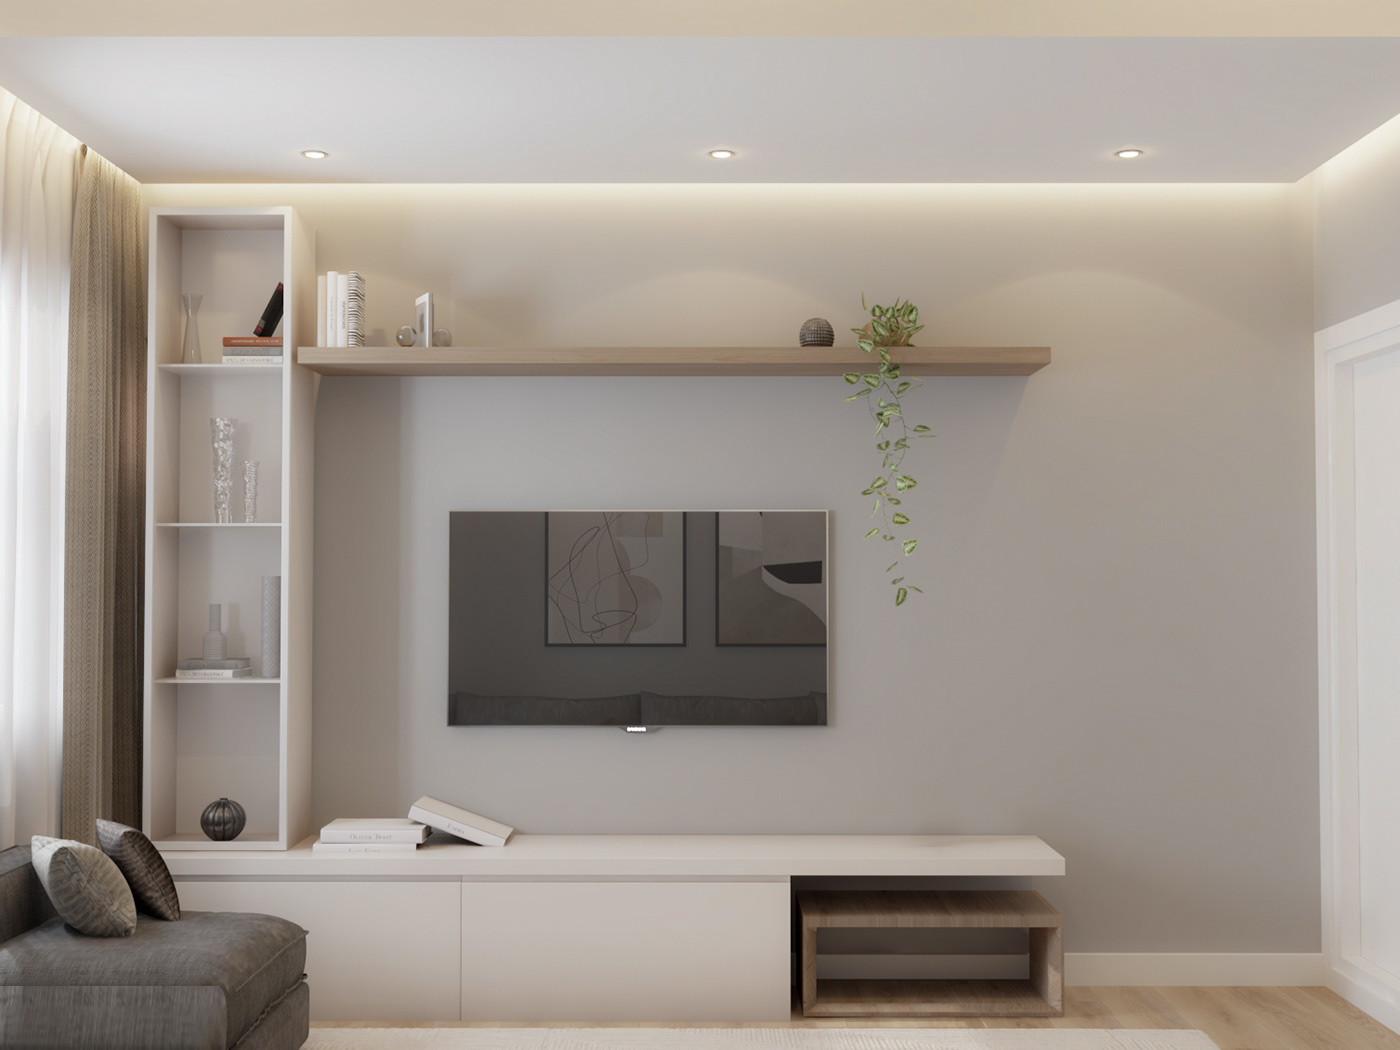 3ds max visualization interior design  living room bedroom design Interior design interiordesigner decor